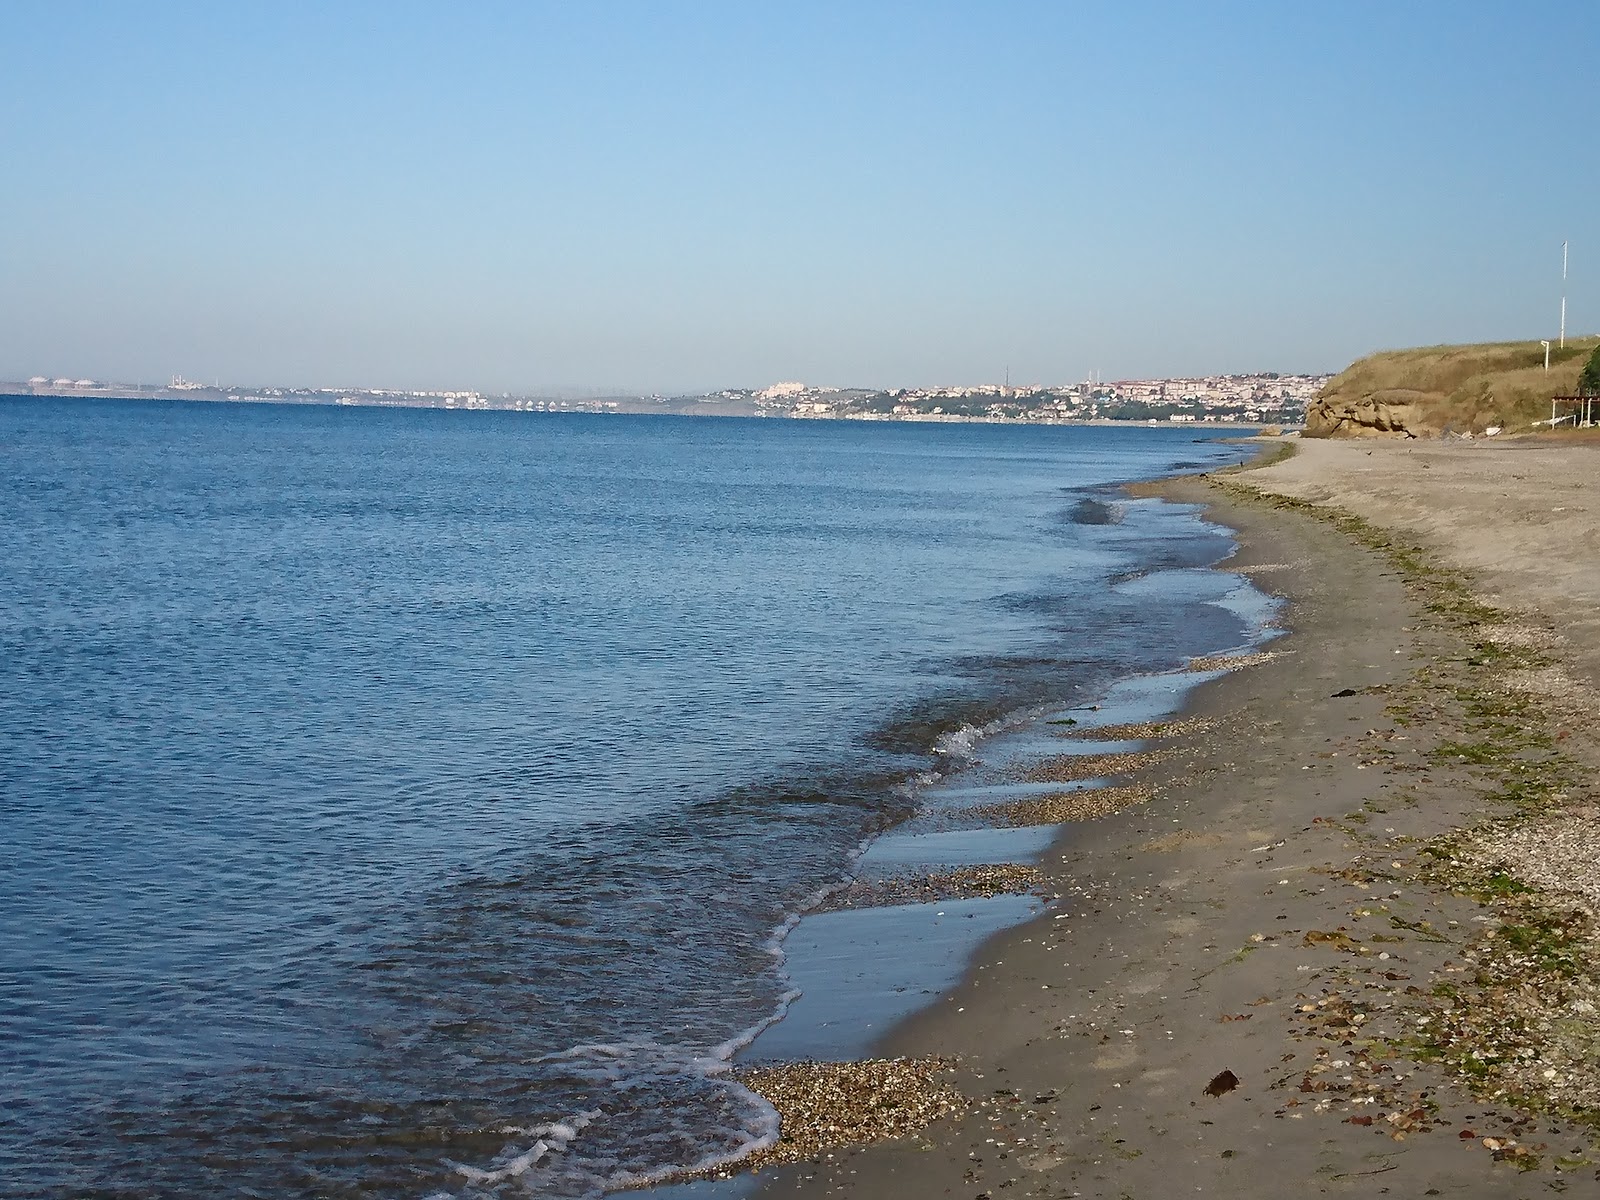 Fotografie cu Balaban beach cu o suprafață de nisip maro